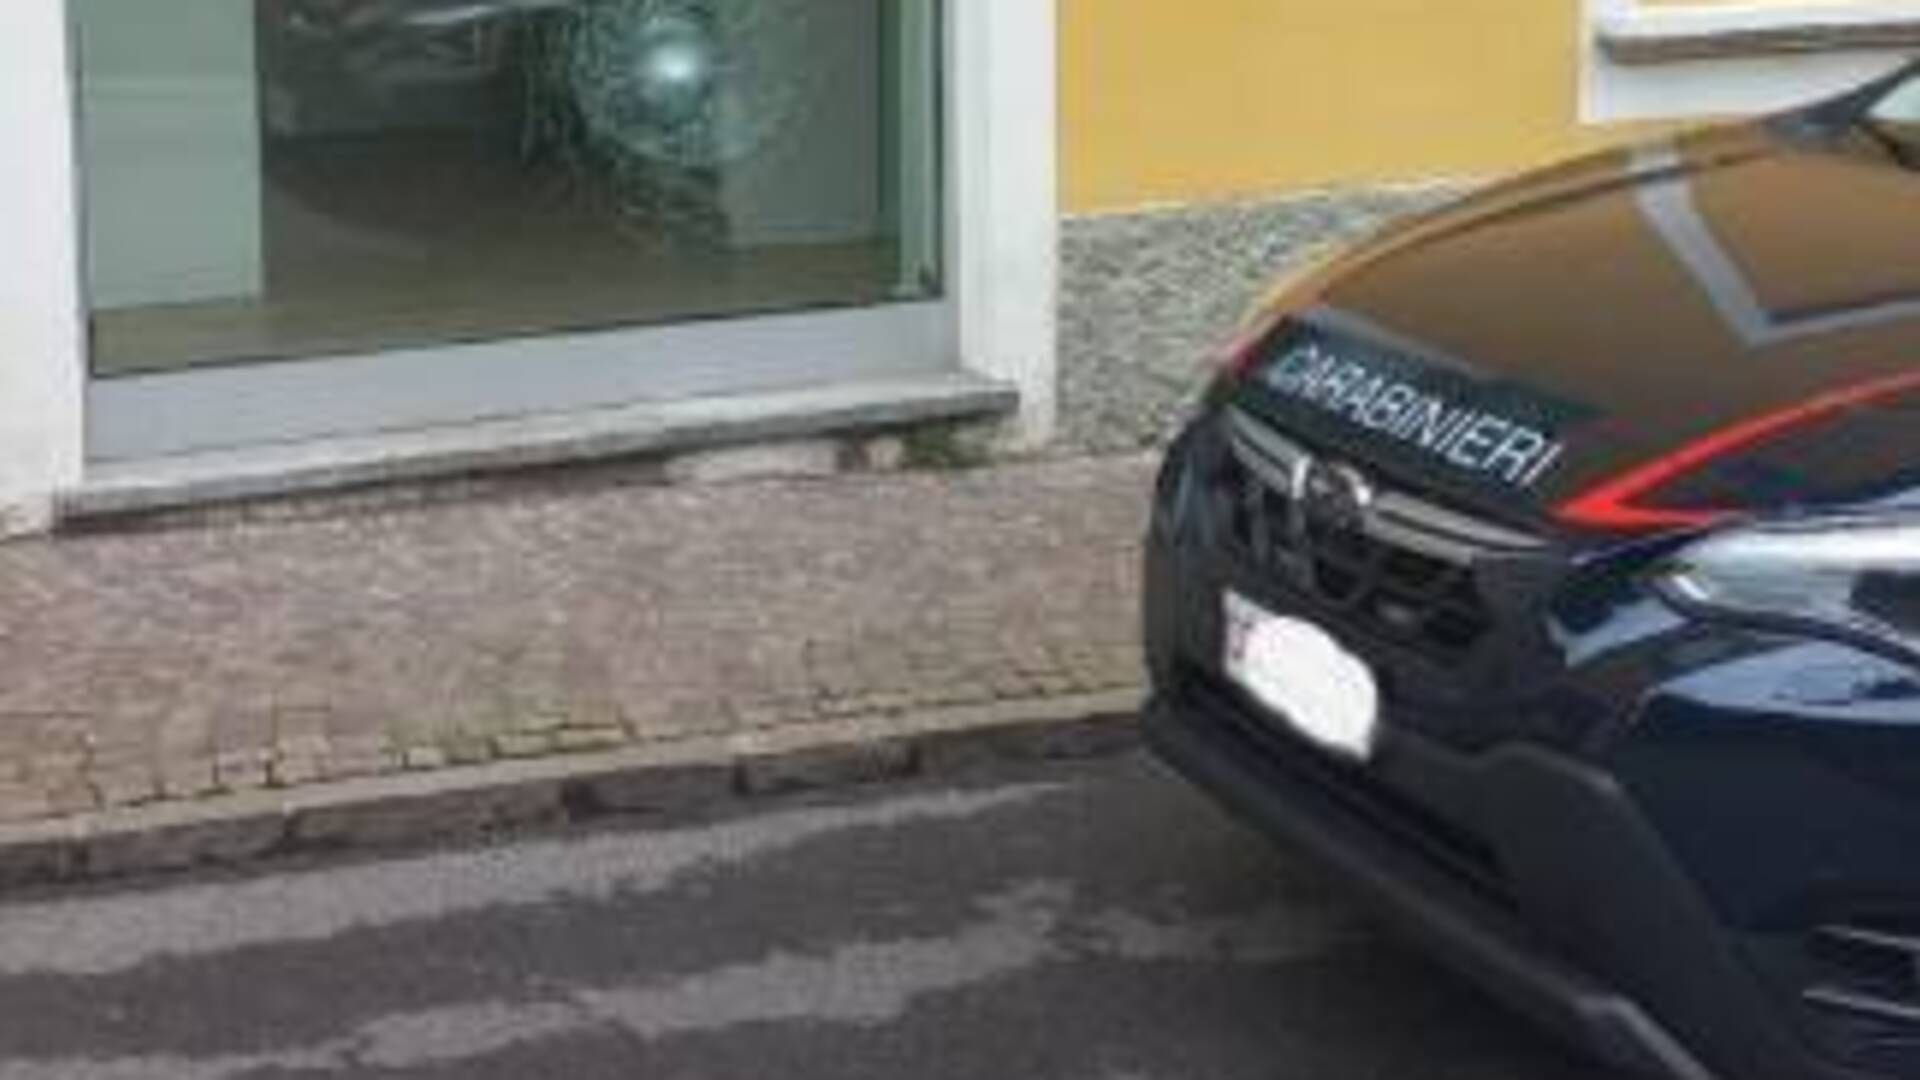 Danneggia la vetrina dell’agenzia immobiliare, denunciato 47enne italiano di Appiano Gentile